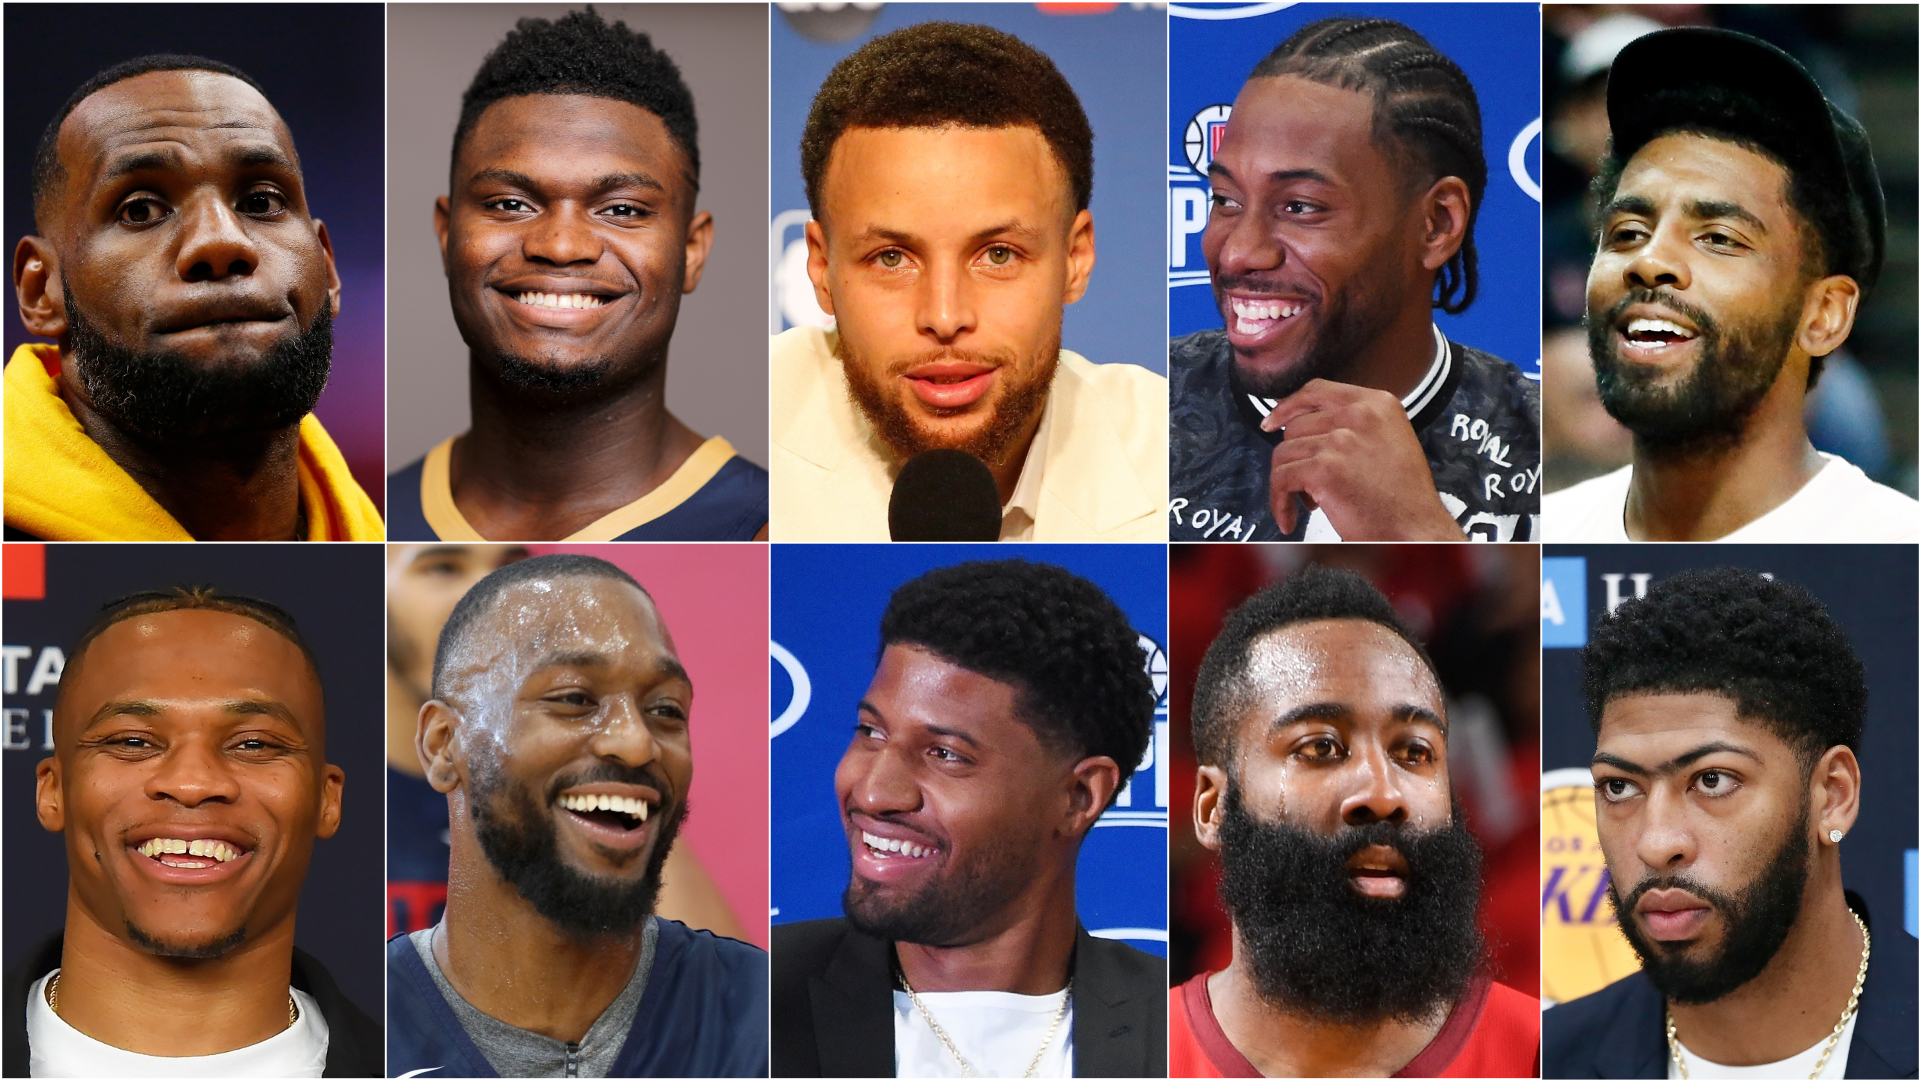 Los 10 mejores partidos del calendario NBA 2019-2020 | NBA ...